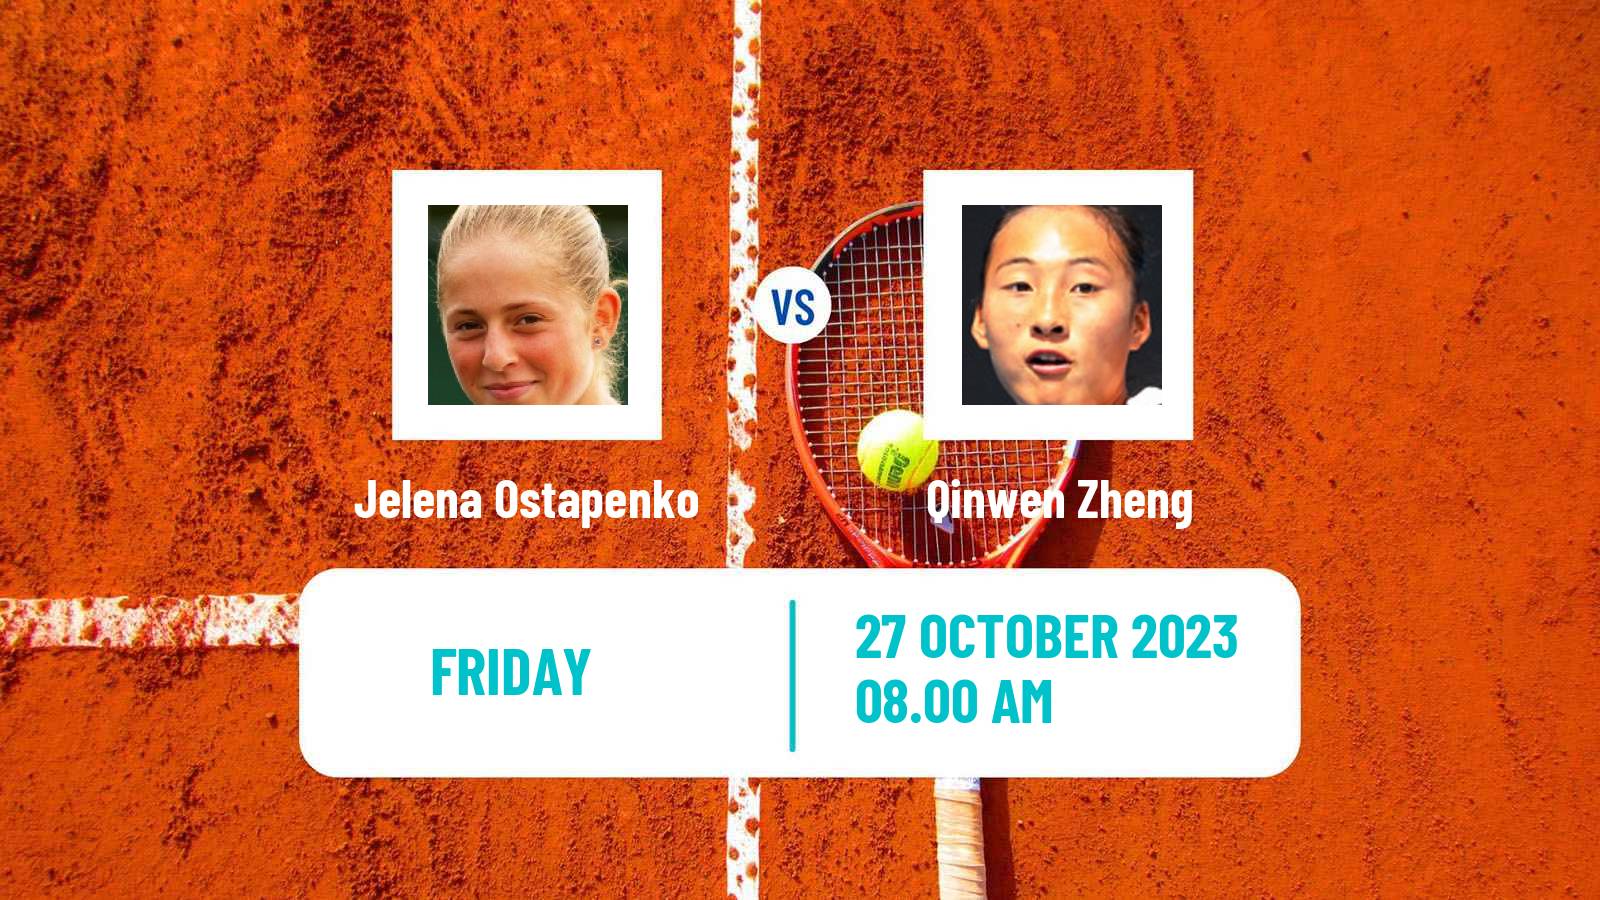 Tennis WTA Zhuhai Jelena Ostapenko - Qinwen Zheng